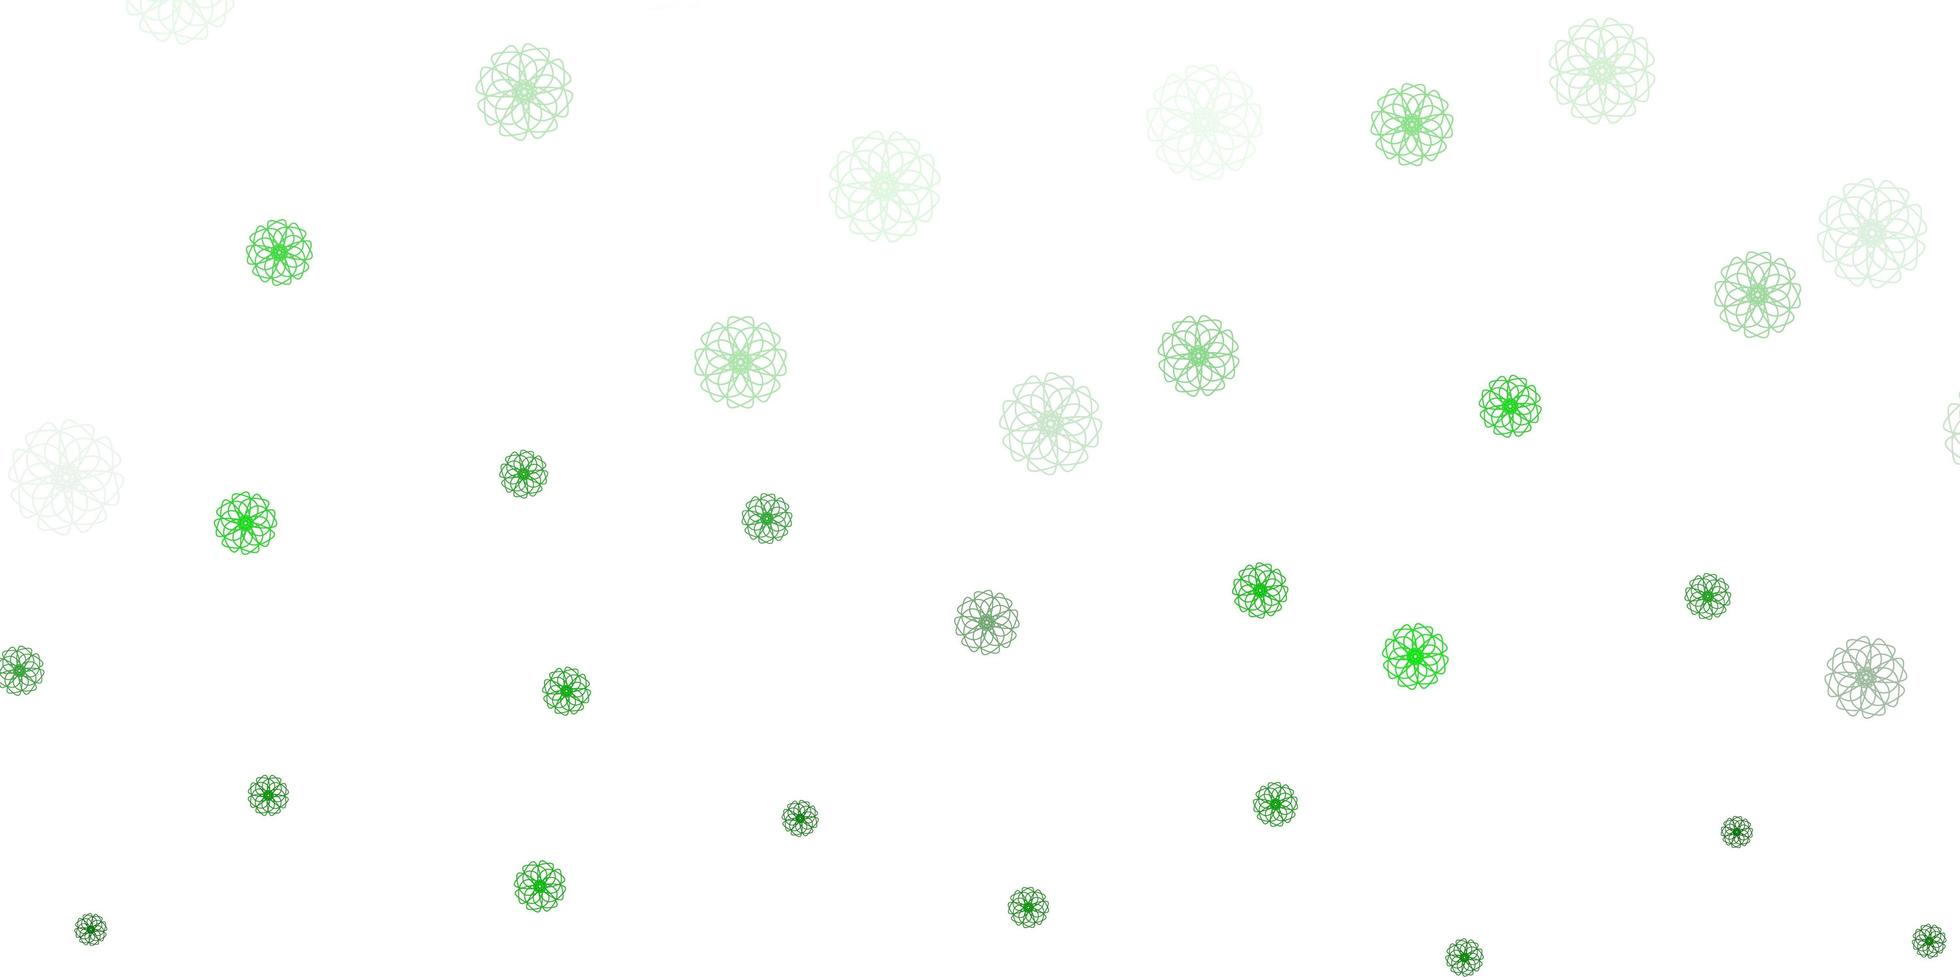 ljusgrön vektor doodle mall med blommor.